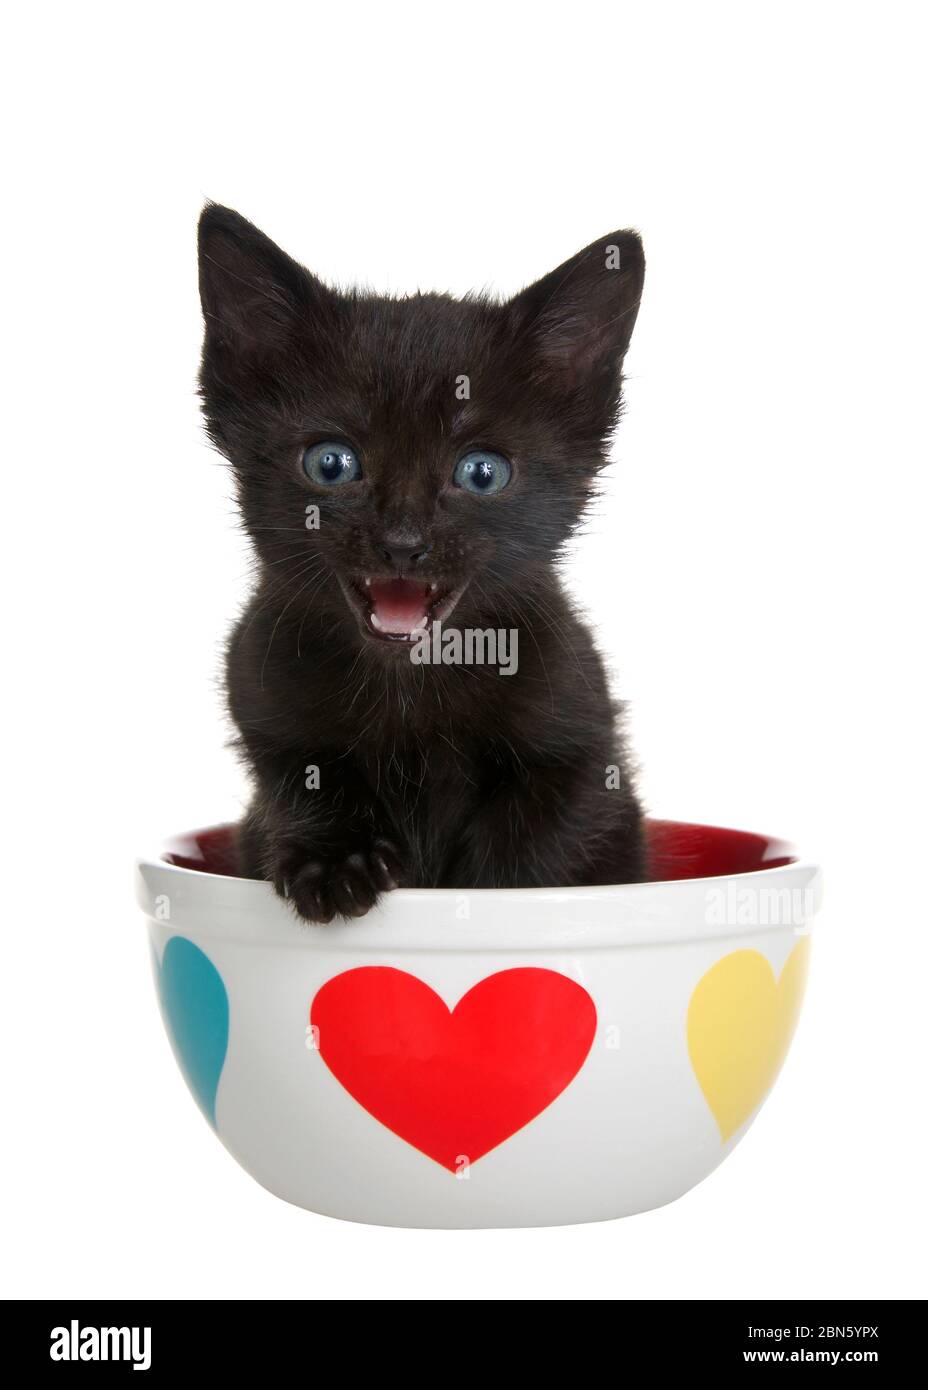 Gros plan portrait d'un adorable chaton noir avec des yeux bleus regardant directement la bouche du spectateur ouverte, assis dans un bol en porcelaine avec les coeurs sur le côté, p Banque D'Images